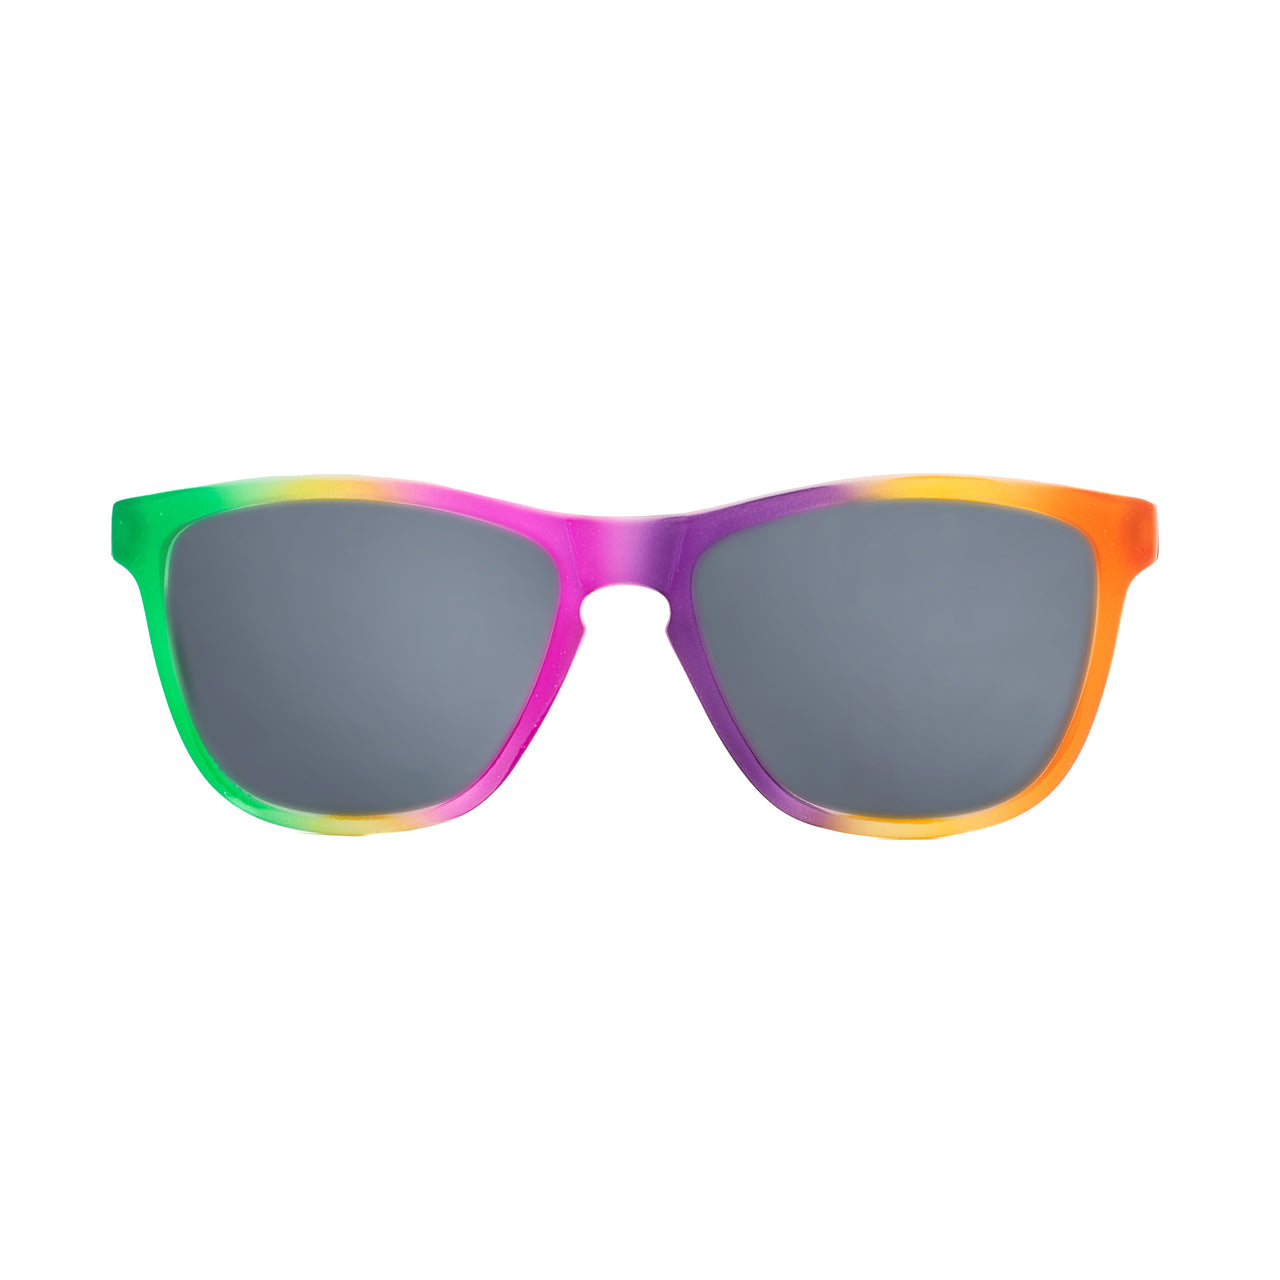 Cody XL Round Sunglasses | Fiery Tort & Grey | DIFF Eyewear